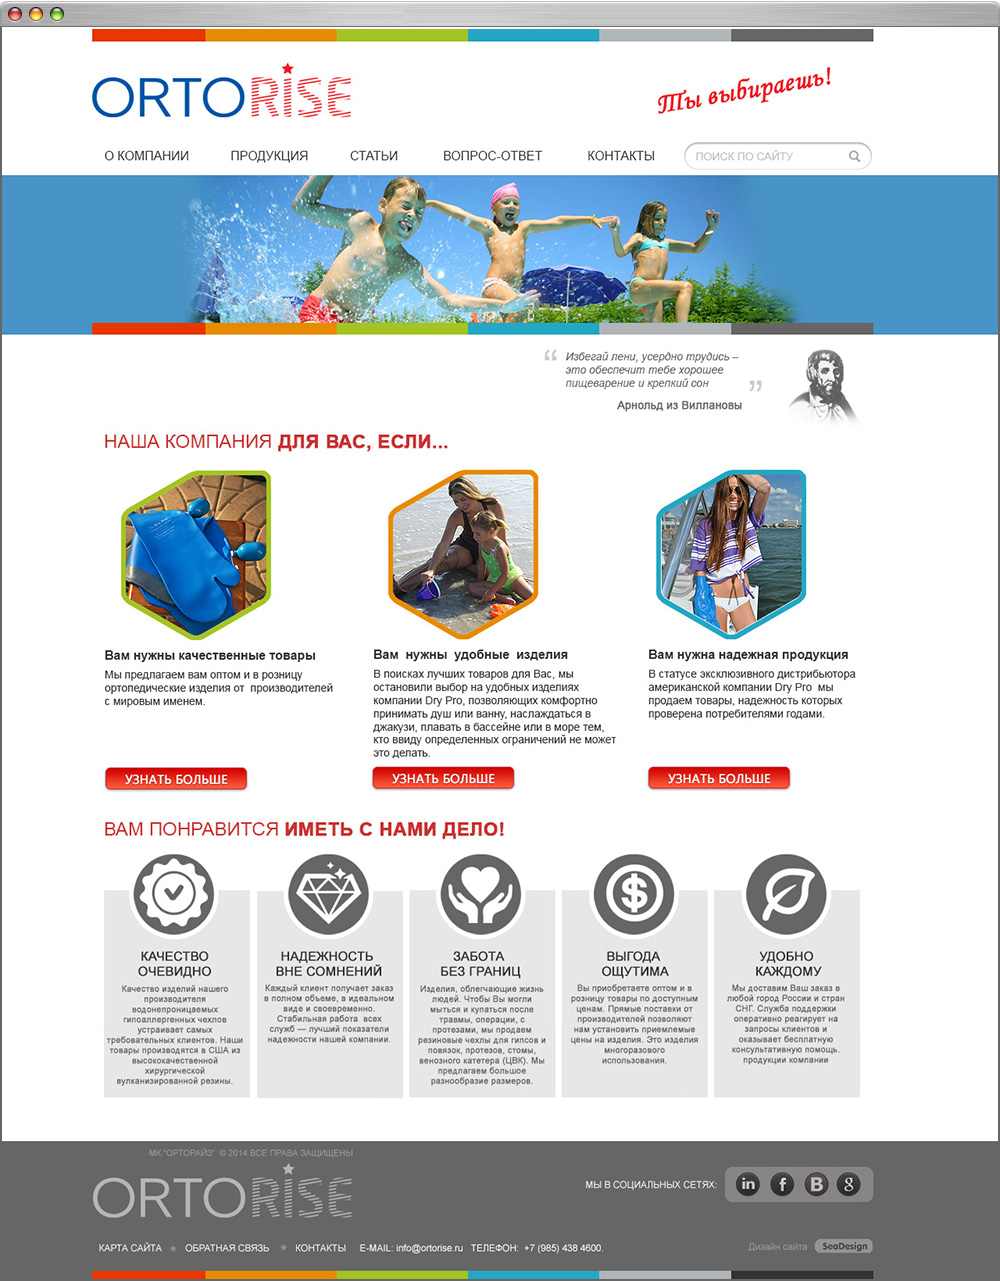 Дизайн главной страницы интернет магазина "ORTORISE"